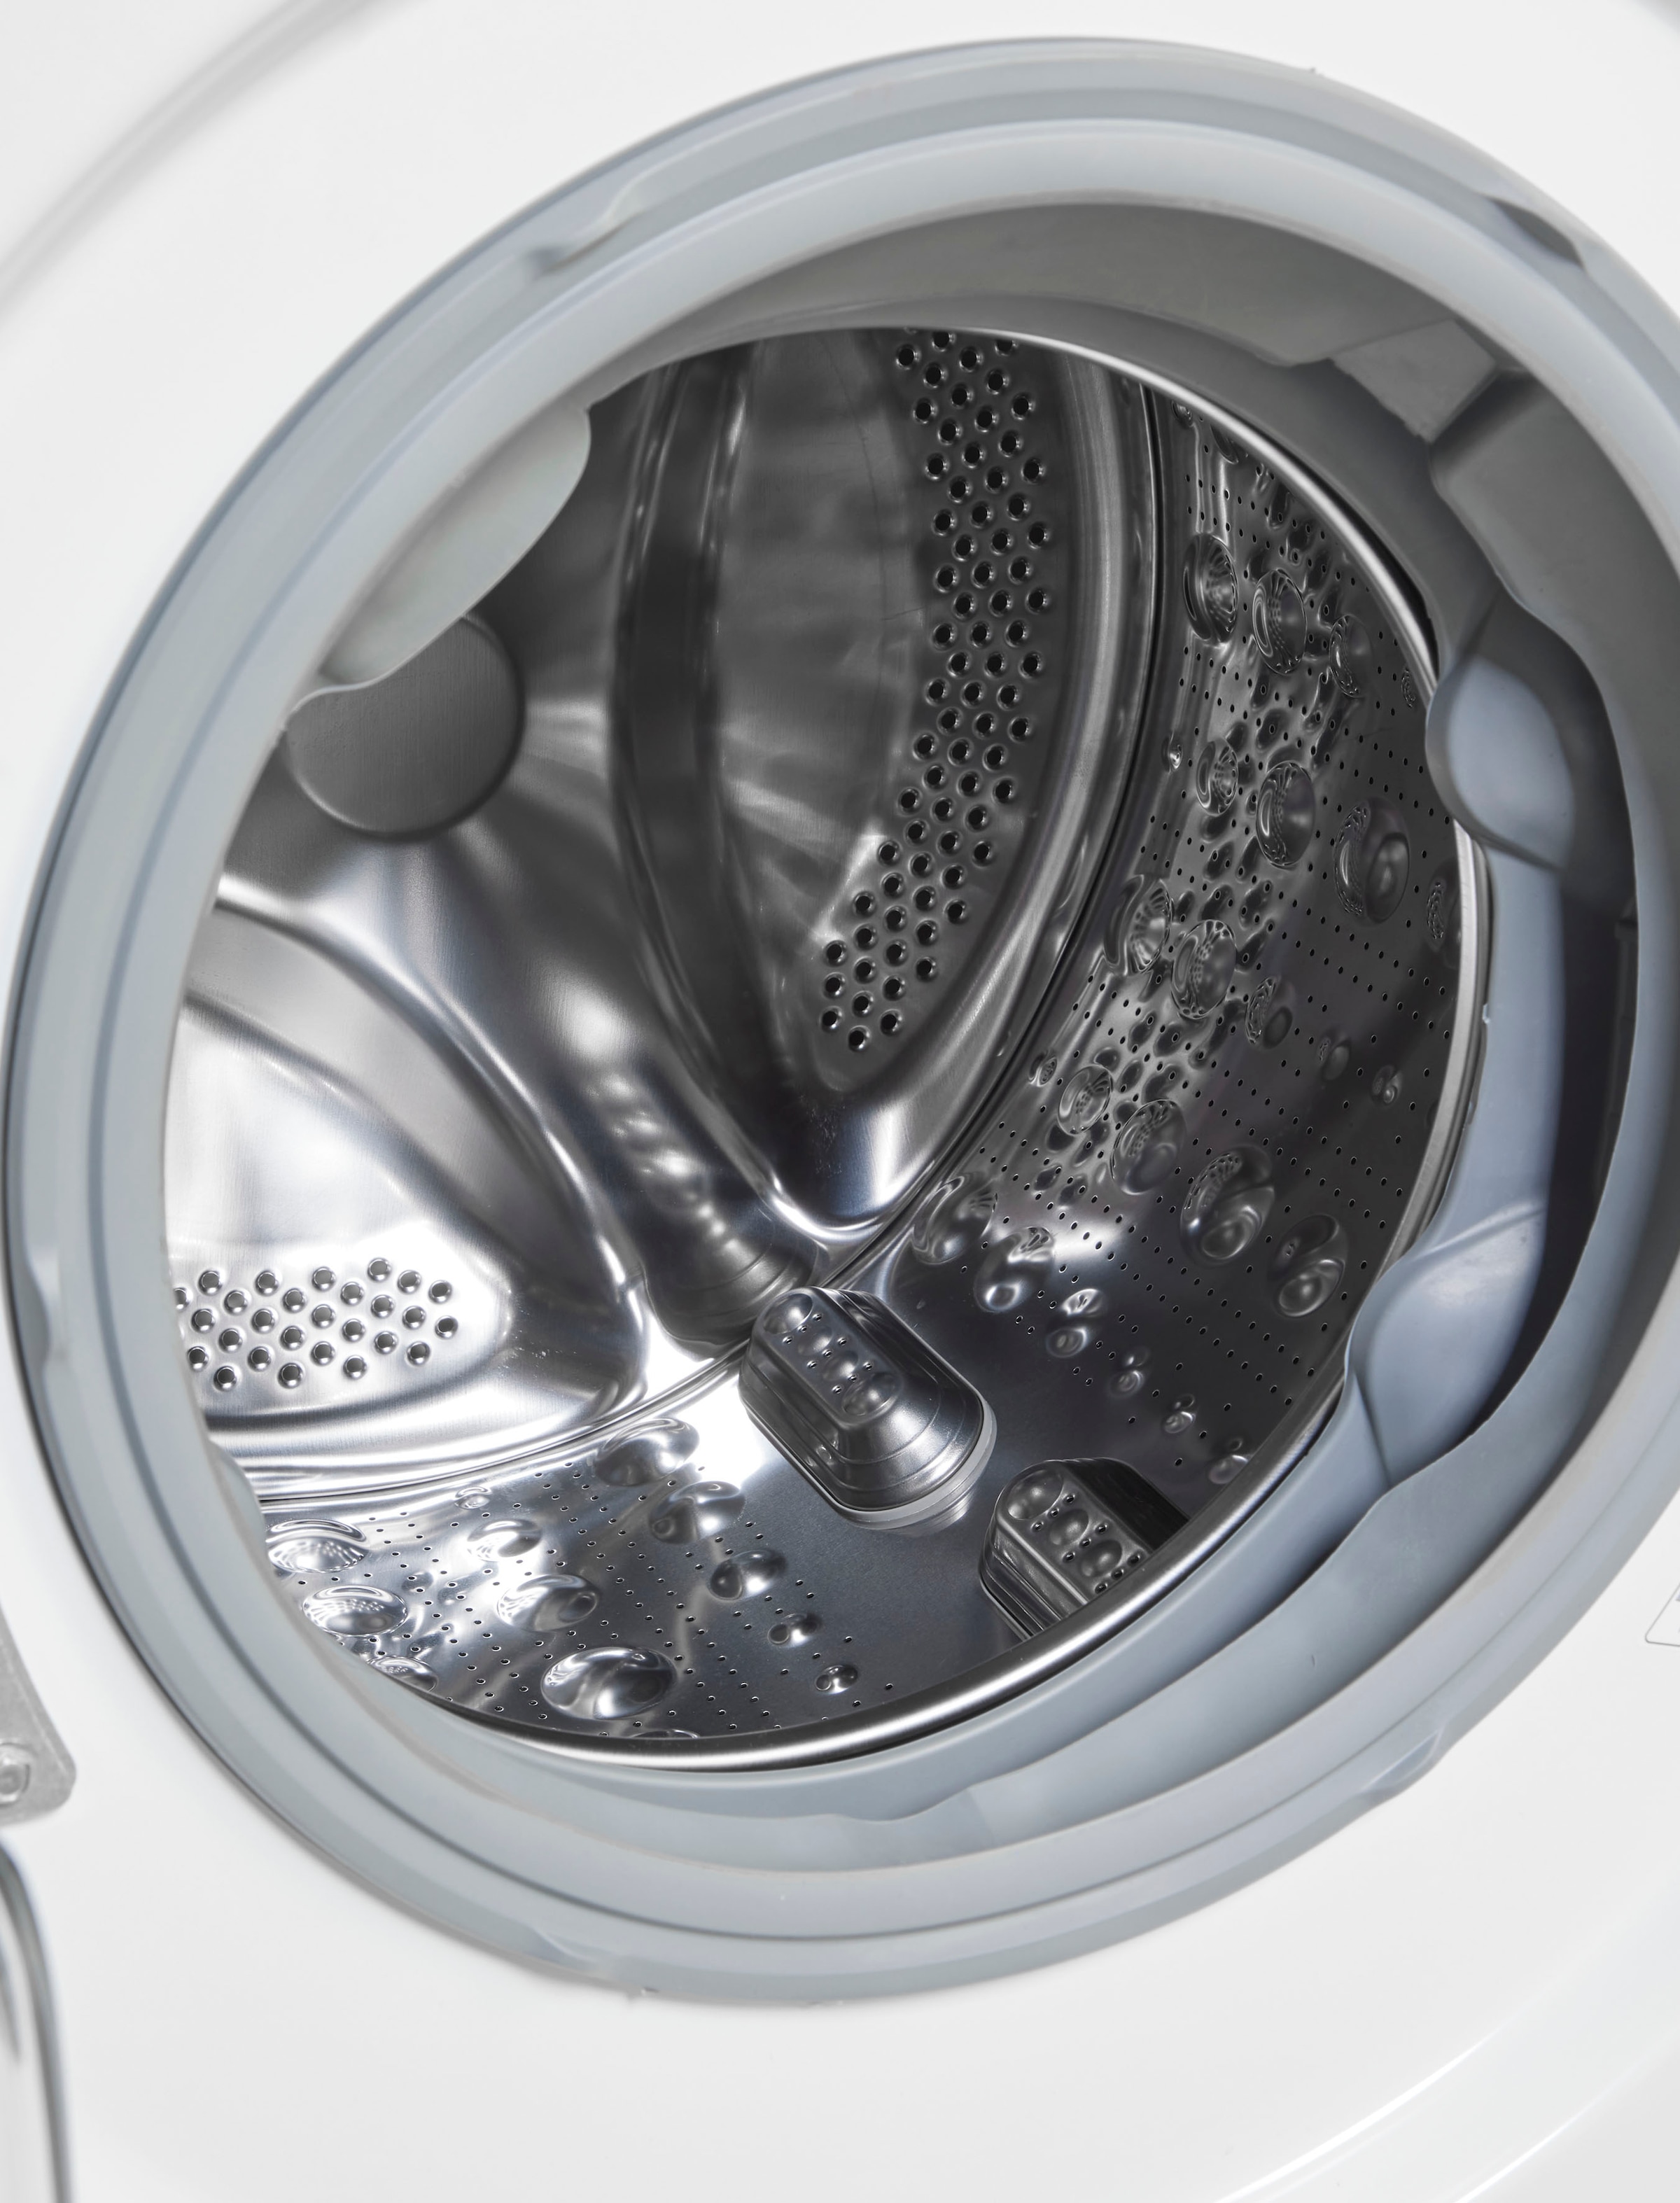 LG Waschmaschine »F4WV609S1A«, F4WV609S1A, 9 OTTO bestellen U/min bei kg, 1400